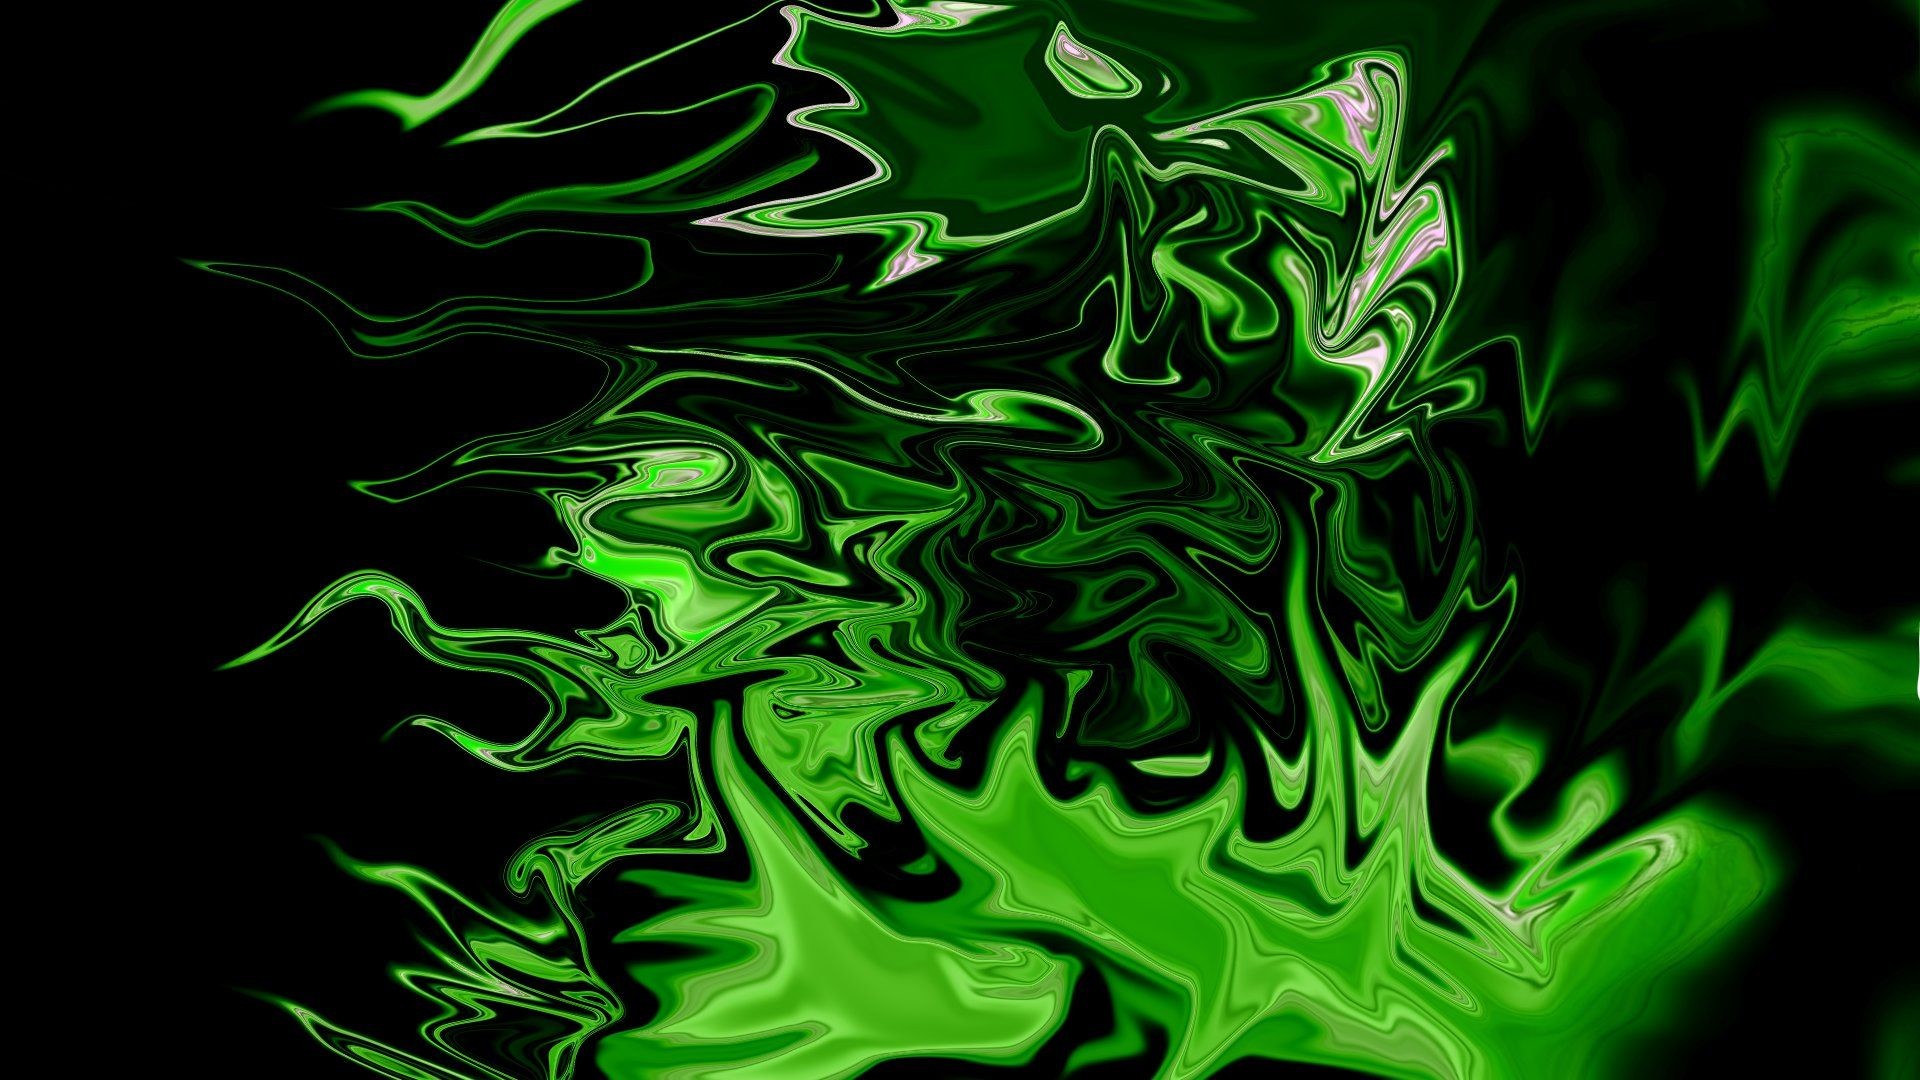 Bạn đang tìm kiếm một hình nền độc đáo và bắt mắt cho điện thoại hay máy tính của mình? Hãy xem ngay hình nền Neon Green Wallpaper đầy sắc màu này để tạo điểm nhấn ấn tượng cho thiết bị của bạn!